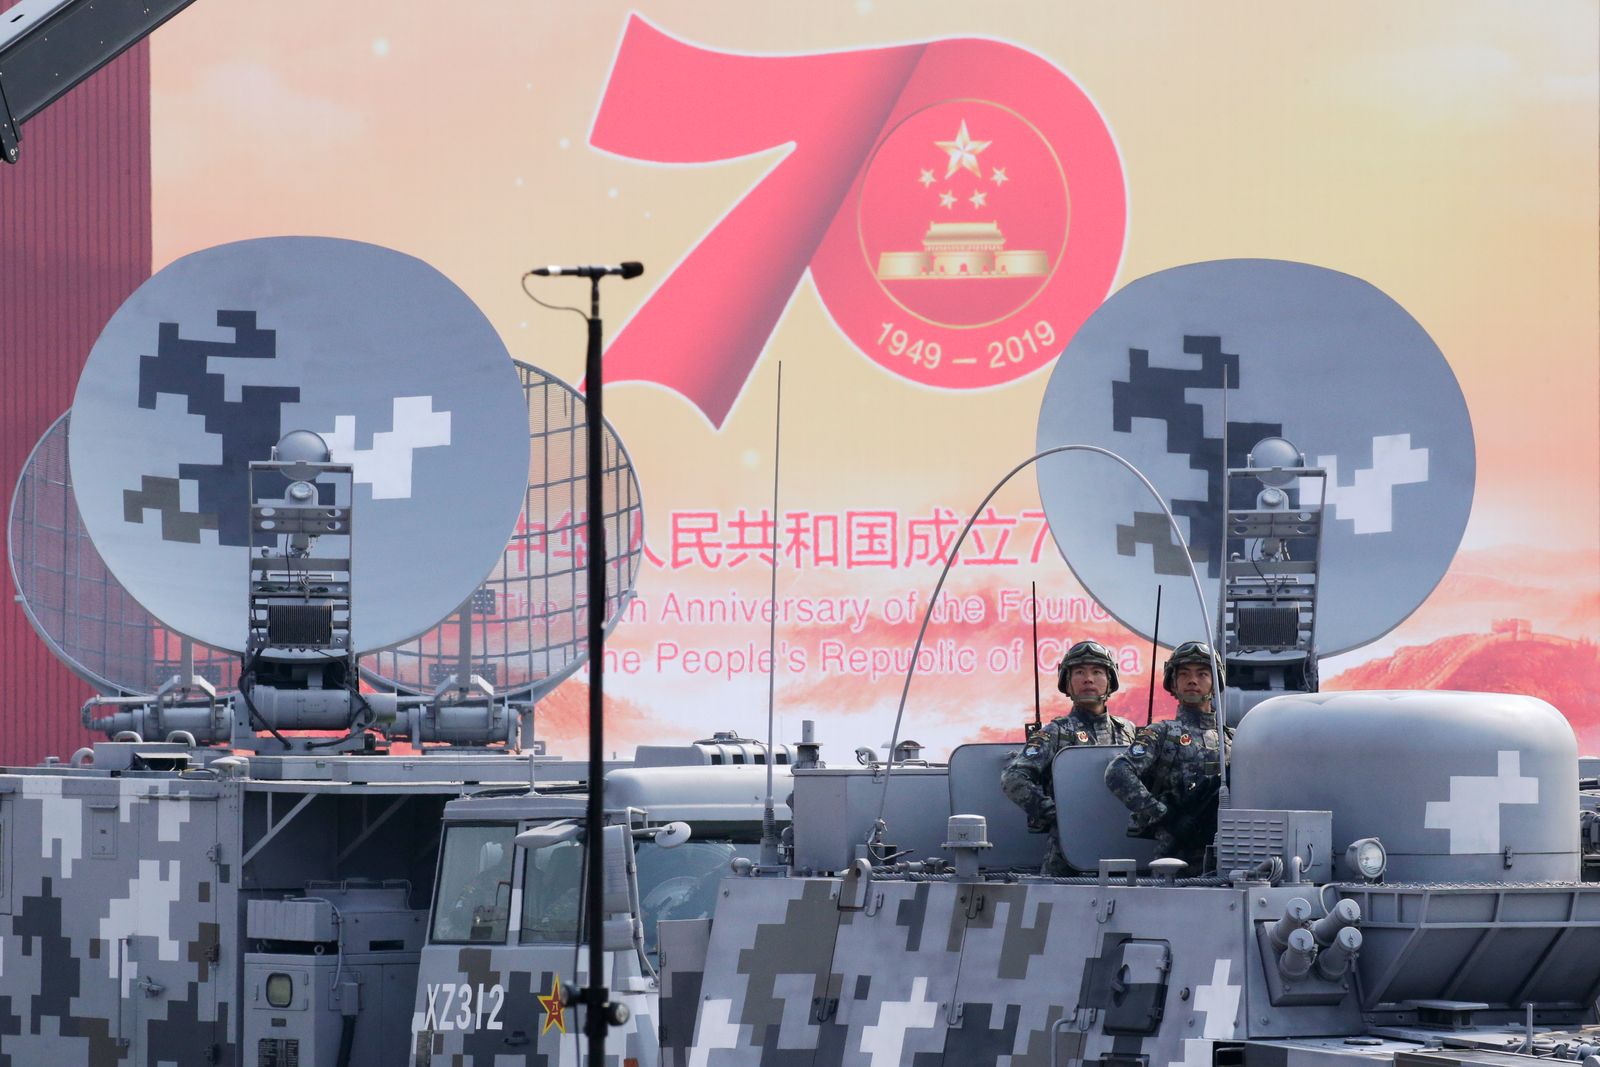 جانب من استعراض عسكري لجيش التحرير الشعبي الصيني بمناسبة ذكرى تأسيسه الـ70، عام 2019. - REUTERS